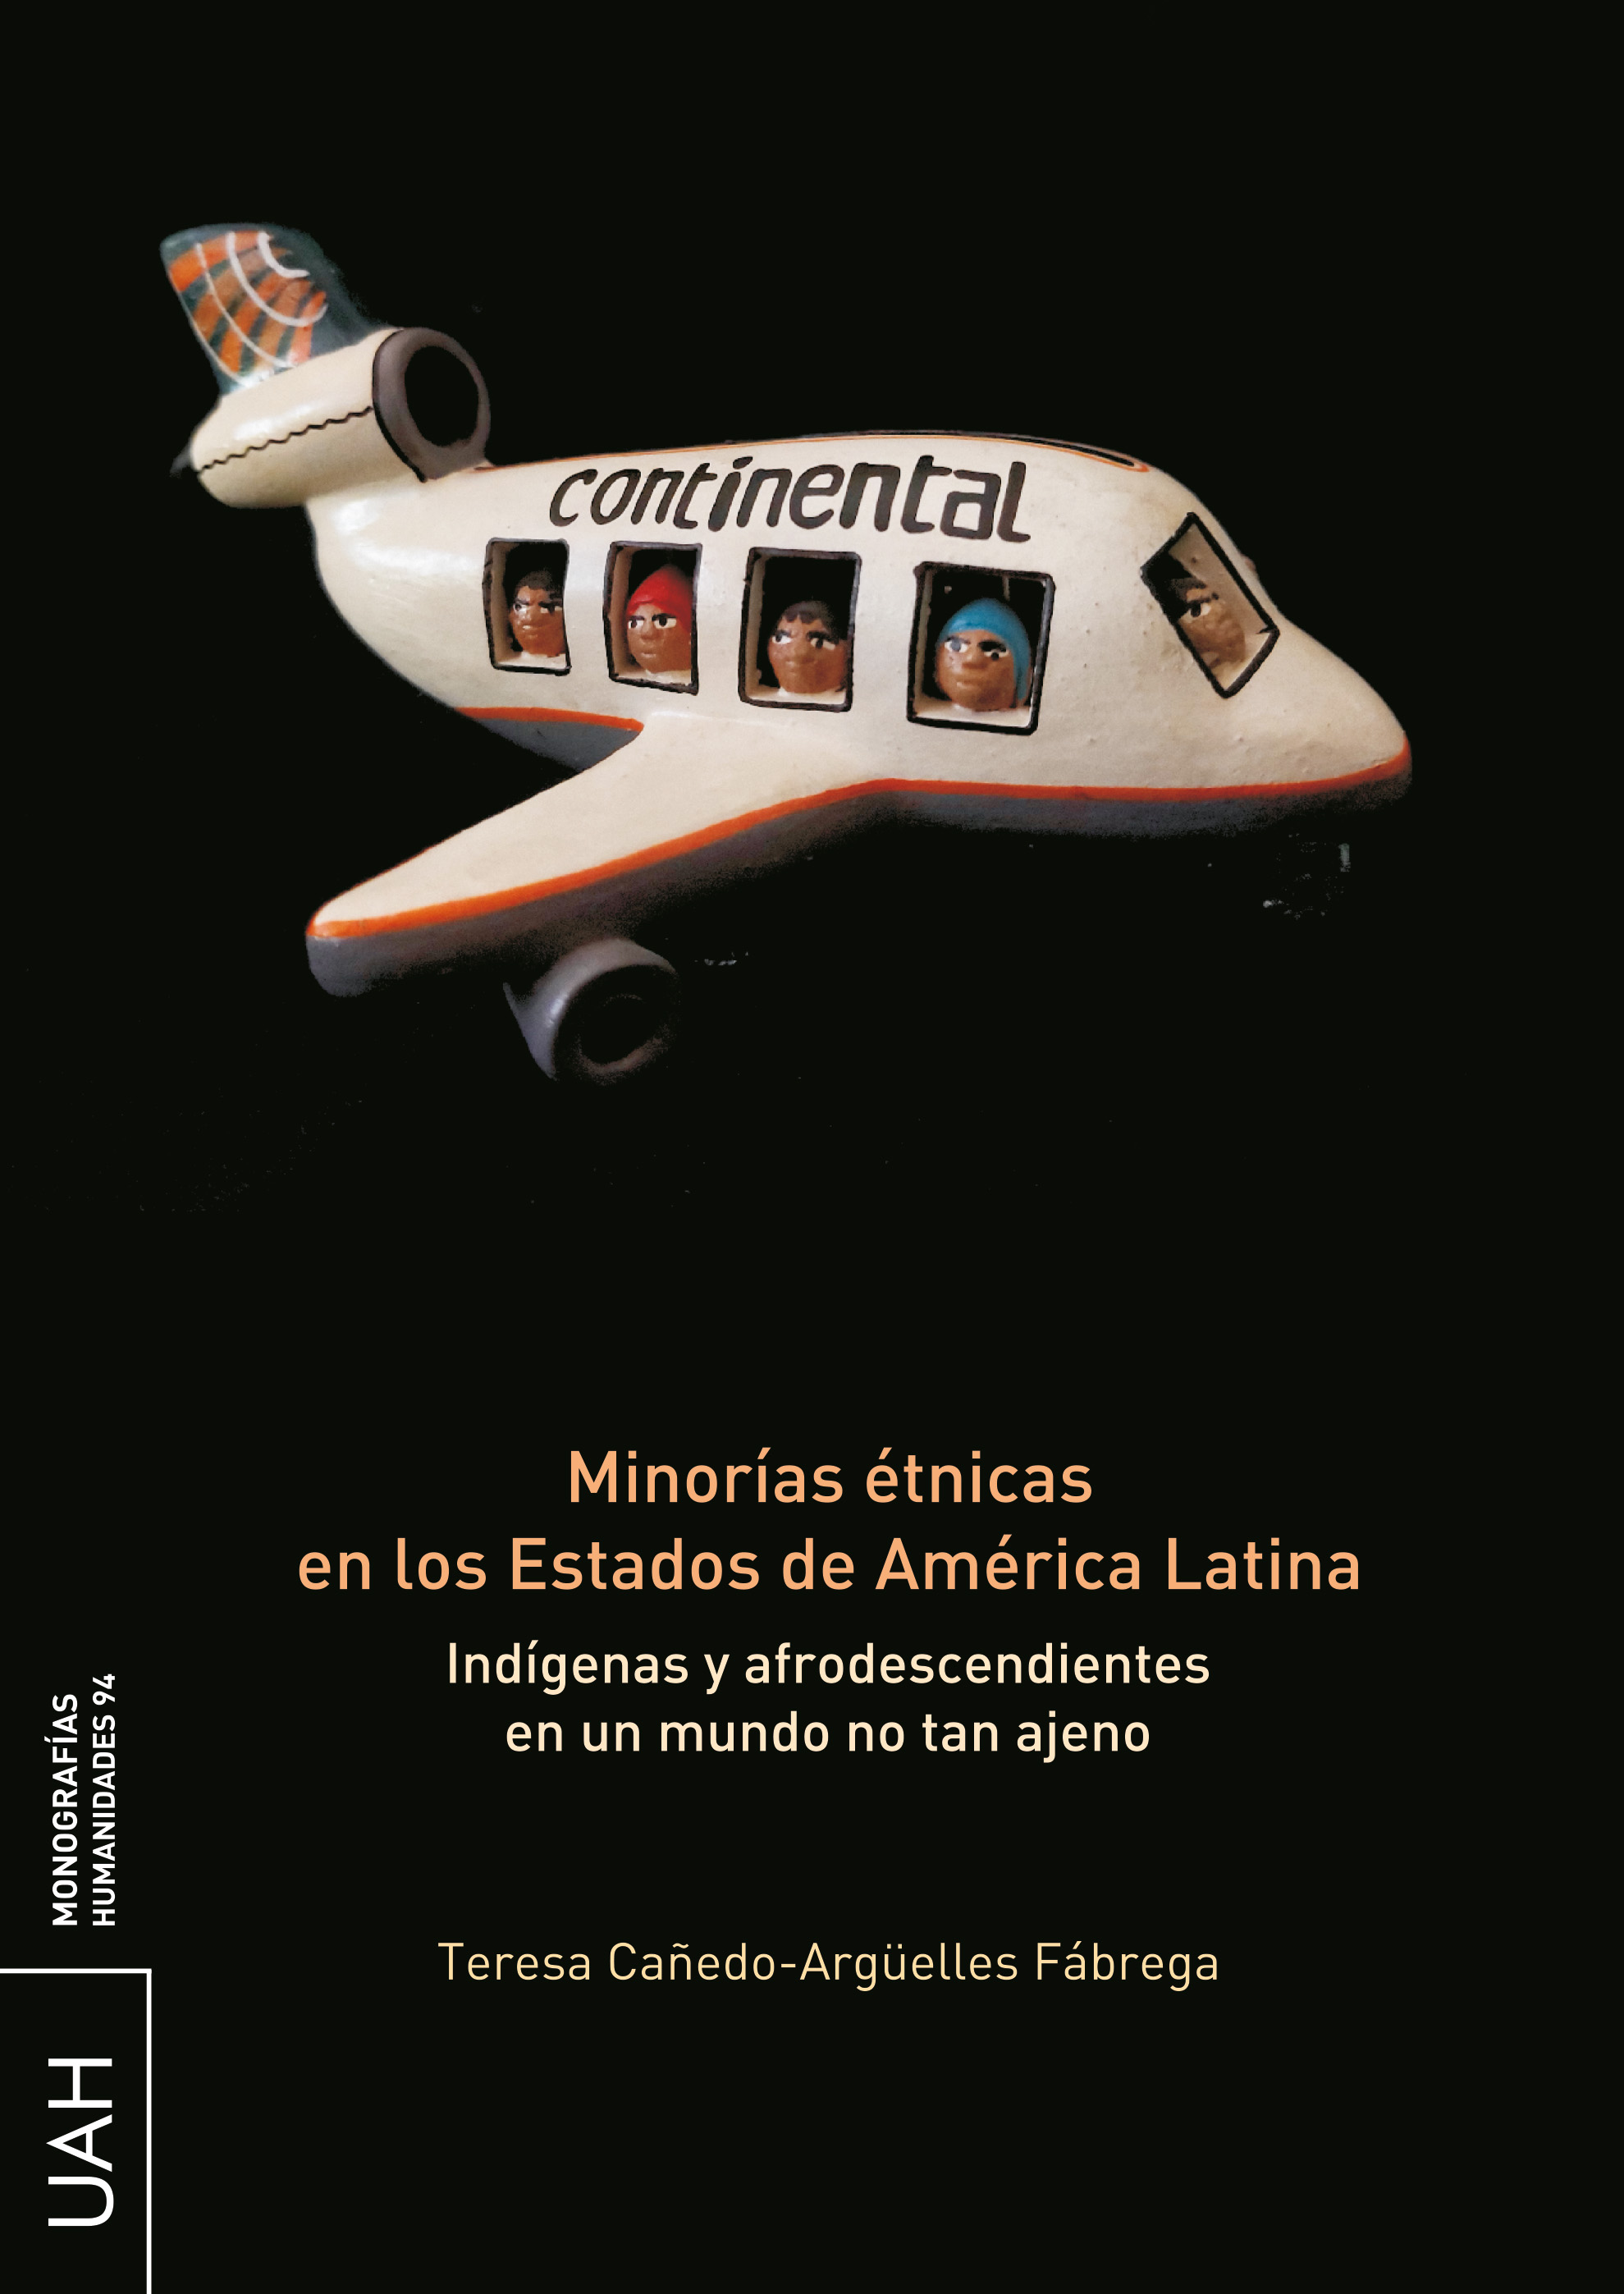 Minorías étnicas en los Estados de América Latina.